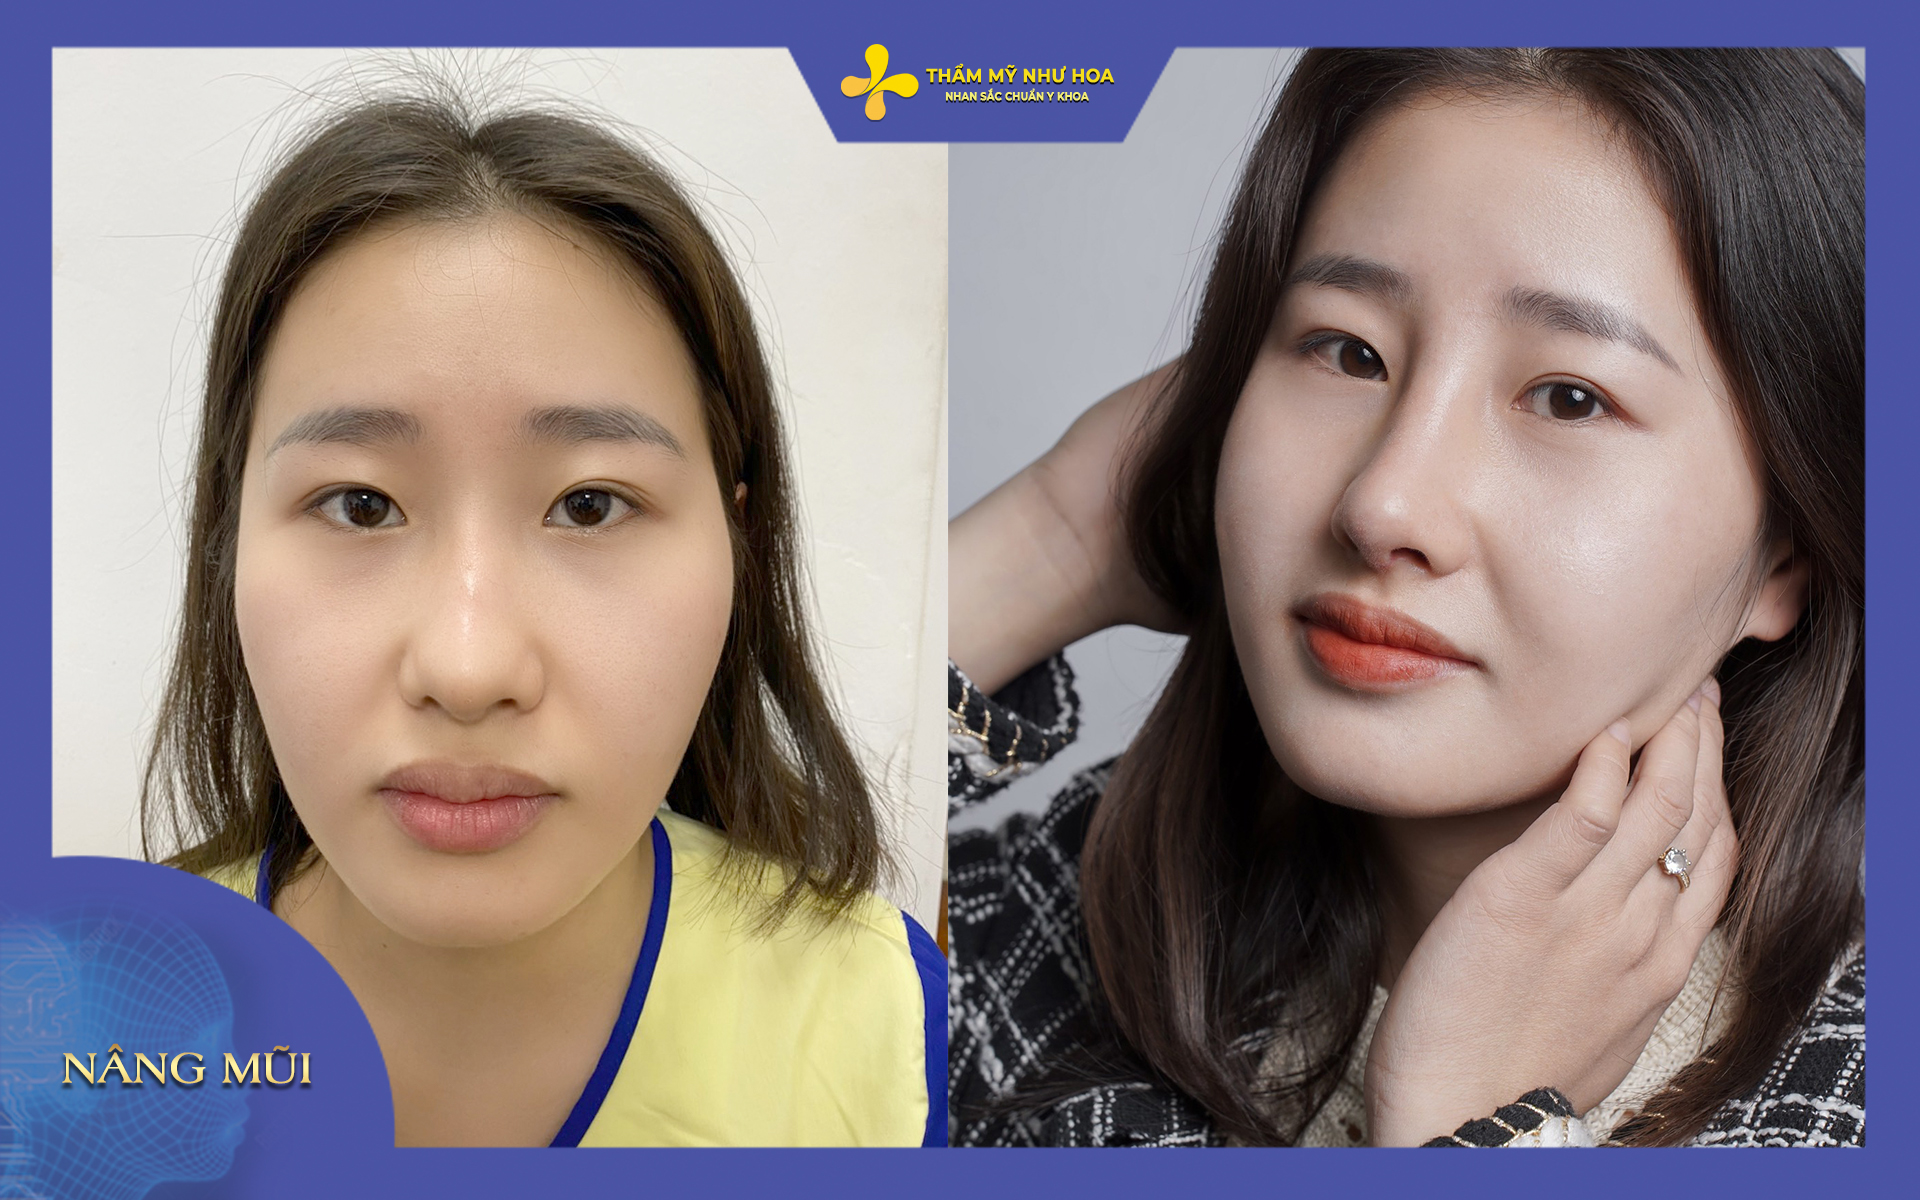 hình ảnh trước và sau khi khách hàng chỉnh sửa dáng mũi củ tỏi tại thẩm mỹ Như Hoa